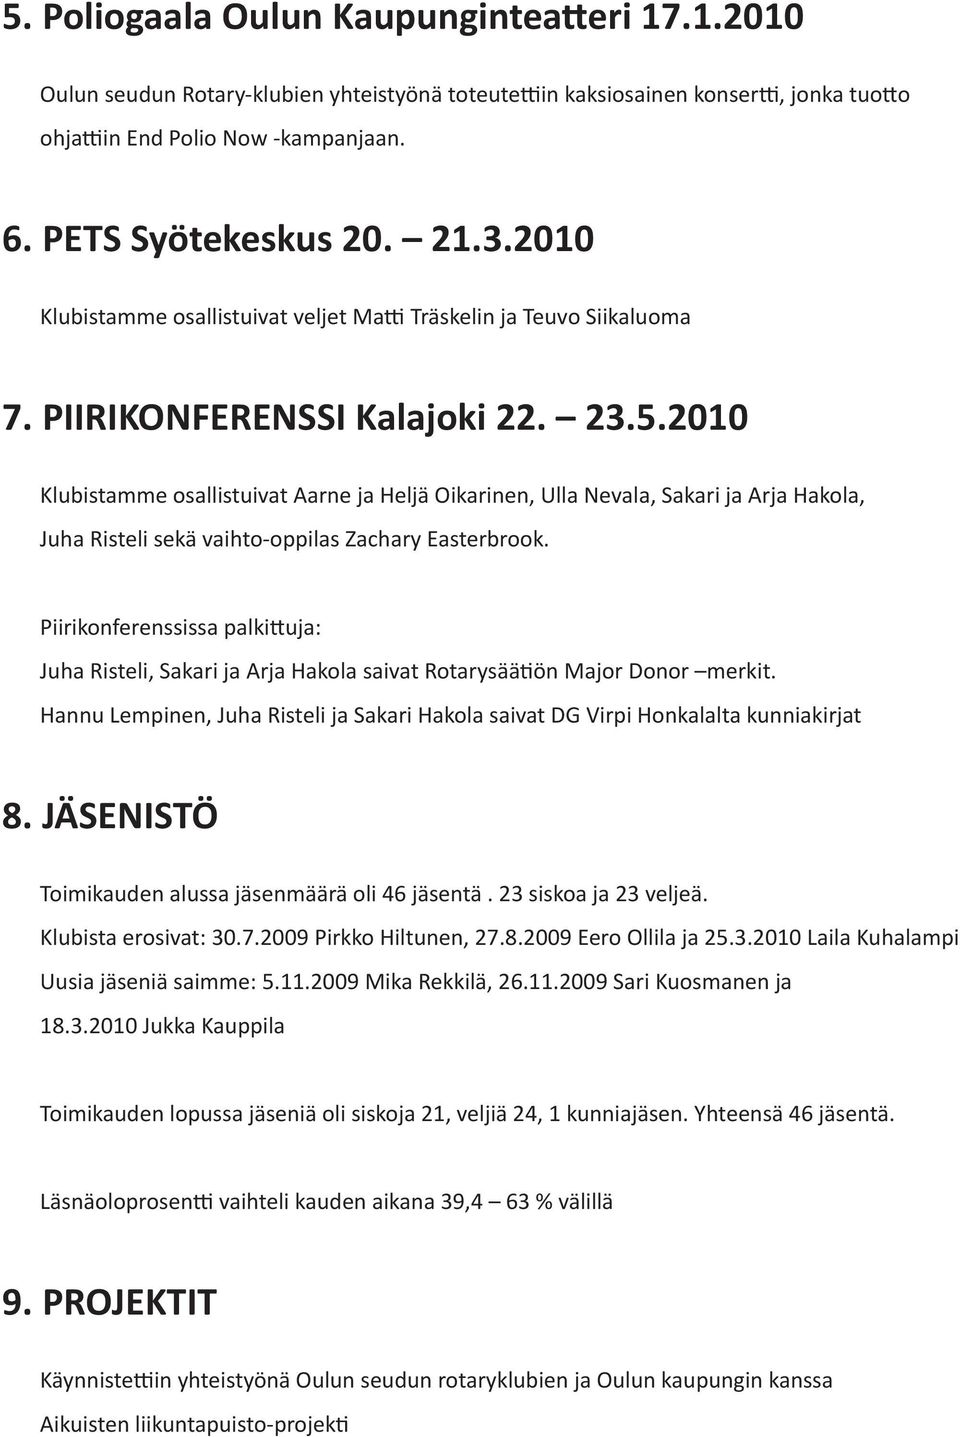 2010 Klubistamme osallistuivat Aarne ja Heljä Oikarinen, Ulla Nevala, Sakari ja Arja Hakola, Juha Risteli sekä vaihto-oppilas Zachary Easterbrook.